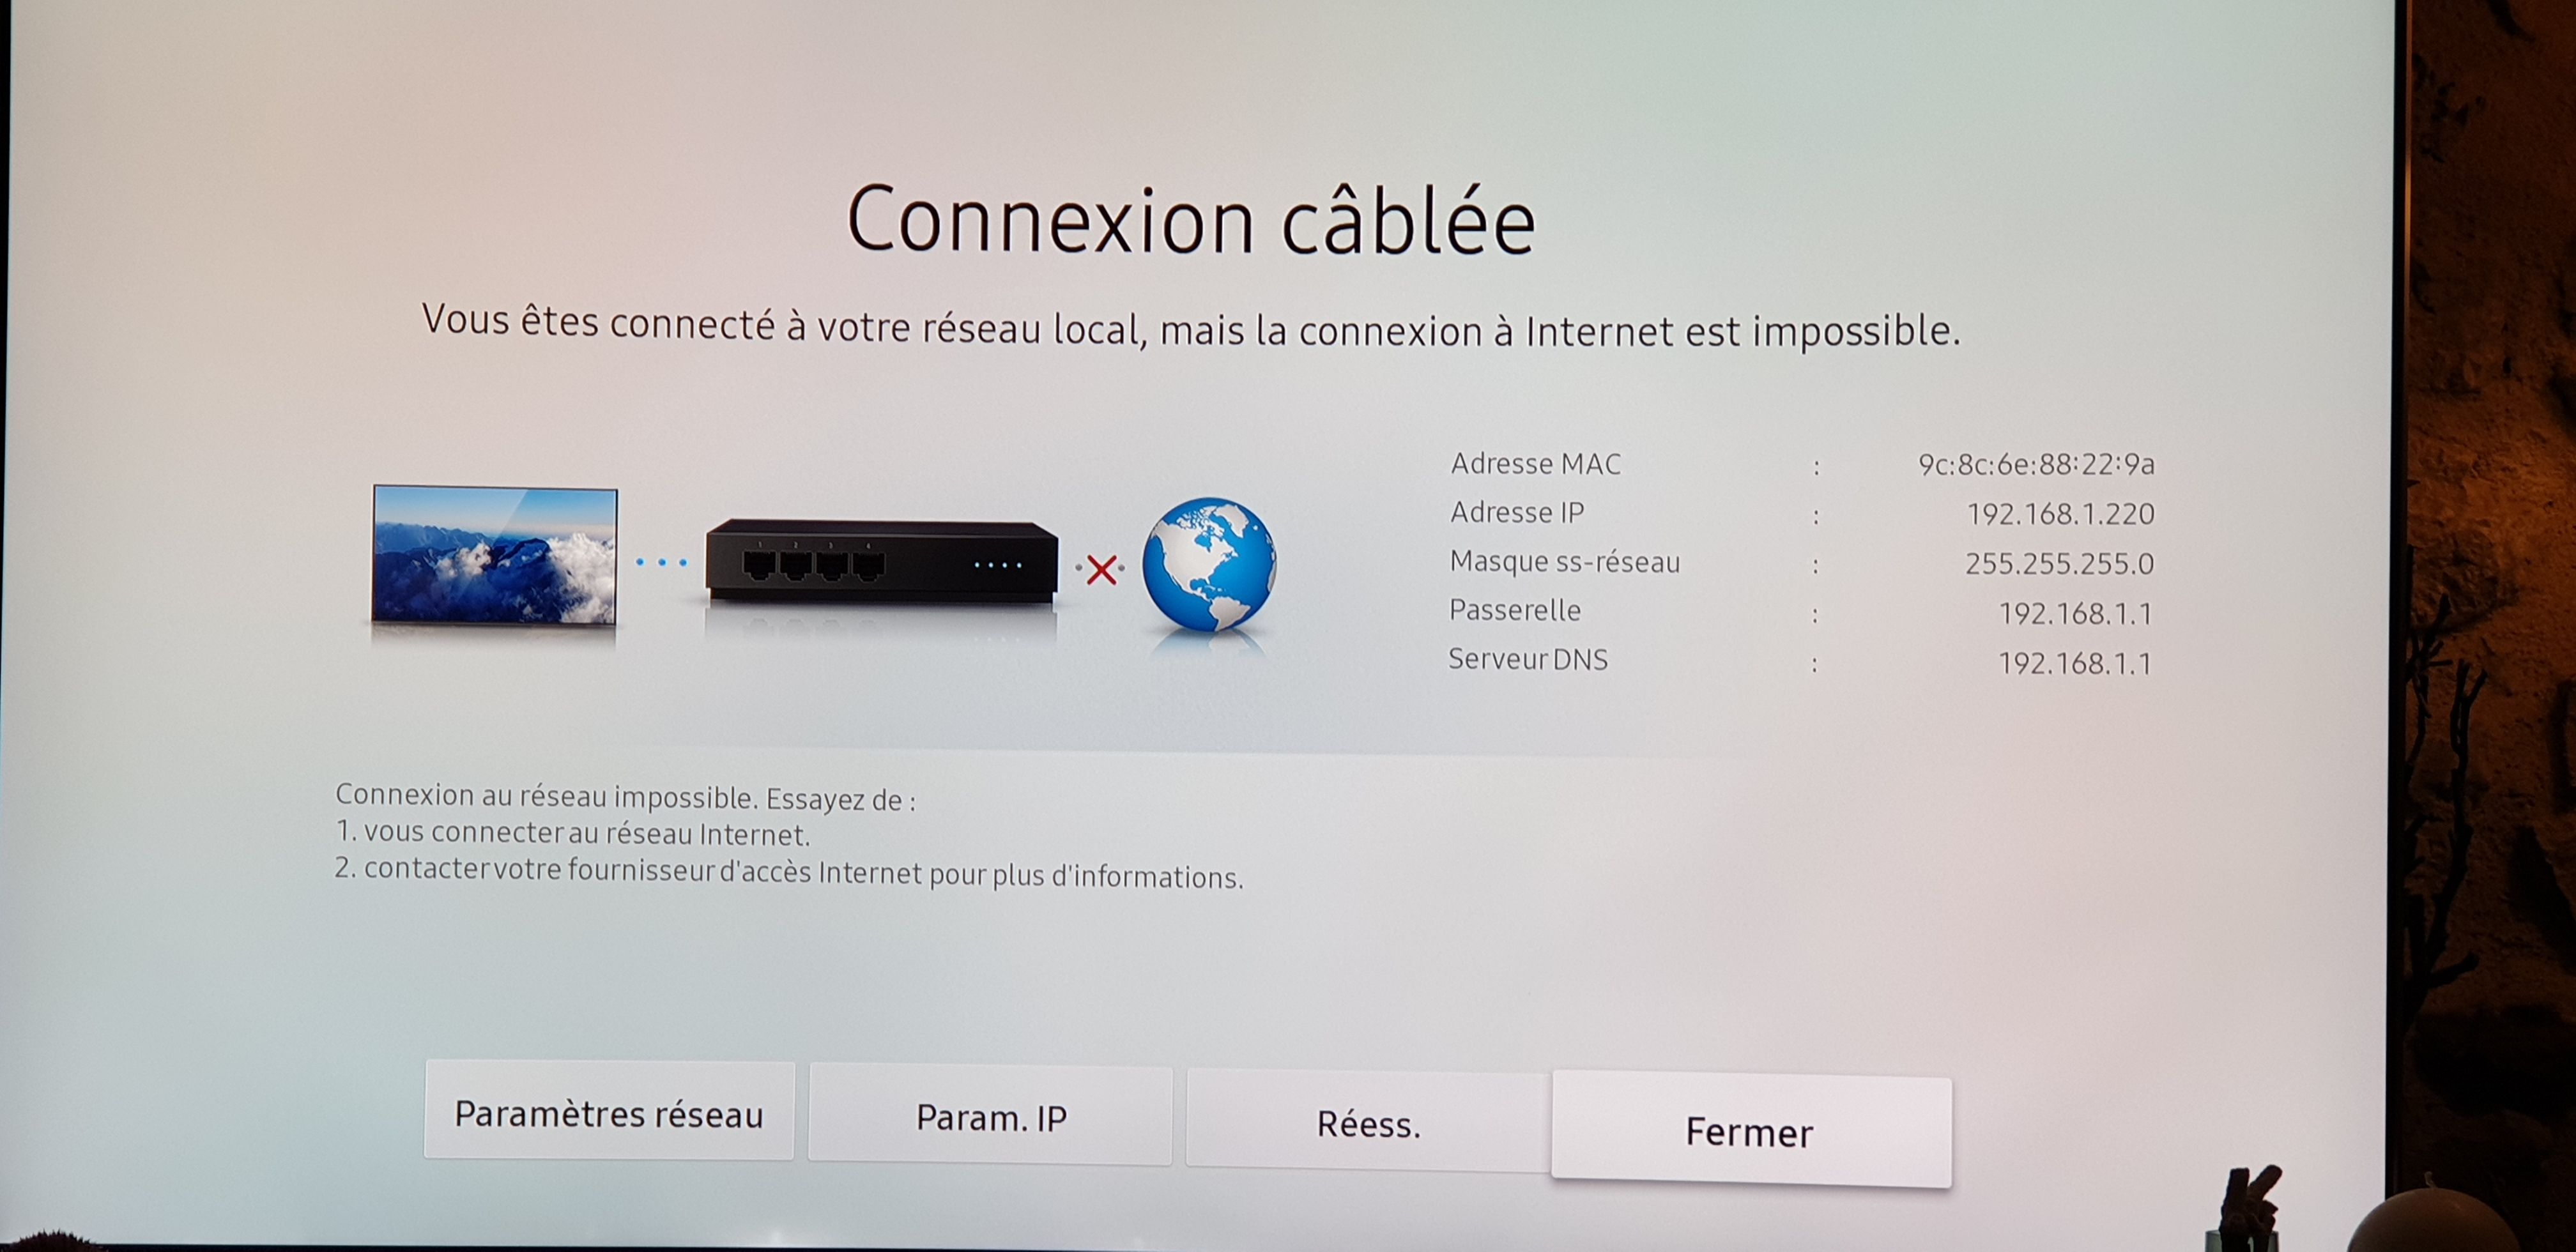 Smart TV connectée au réseau local mais pas a internet...!!! - Samsung  Community